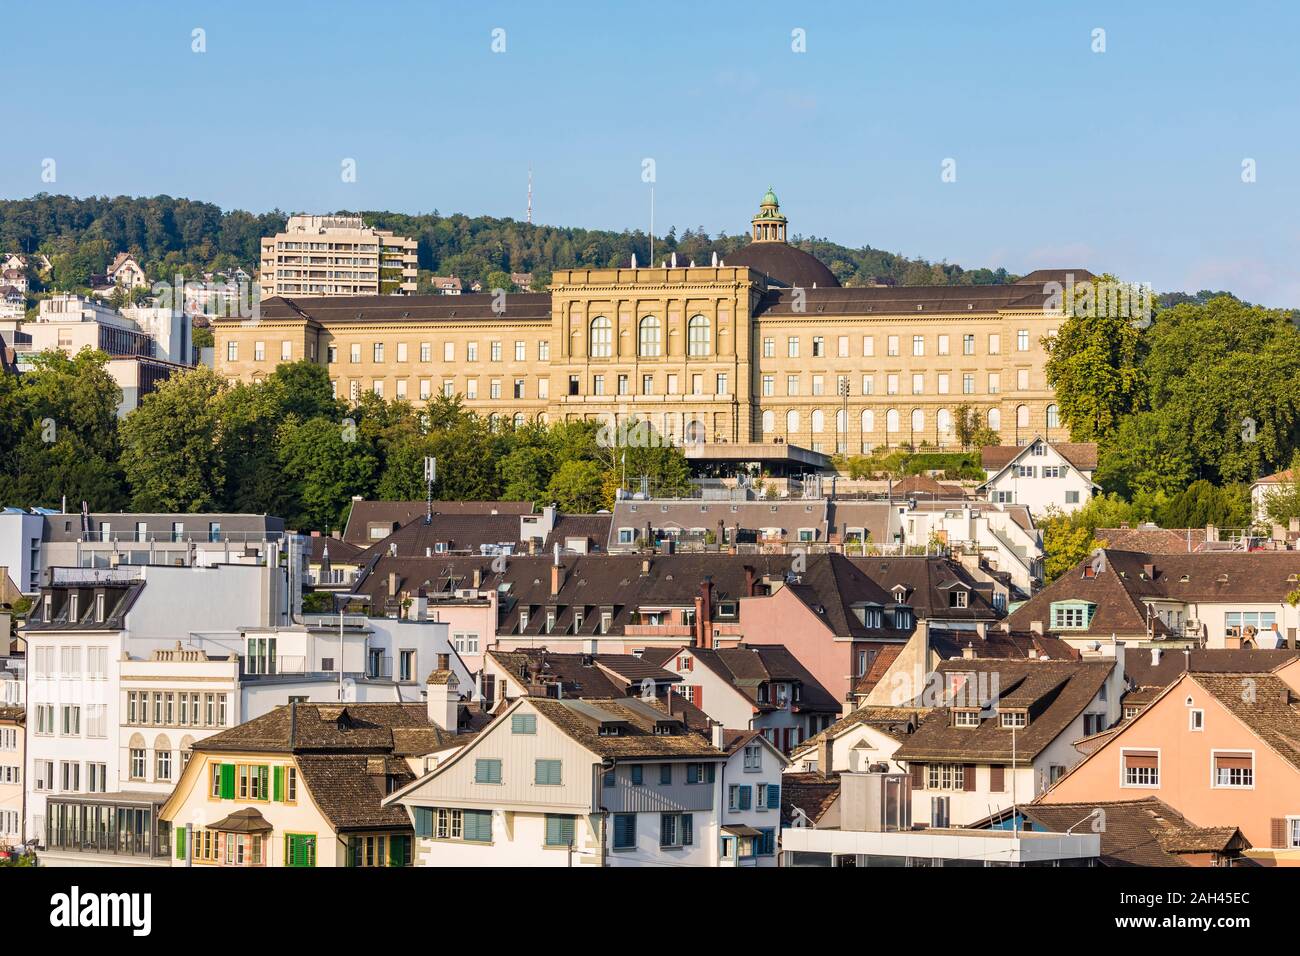 Switzerland, Canton of Zurich, Zurich, Swiss Federal Institute of Technology in Zurich Stock Photo